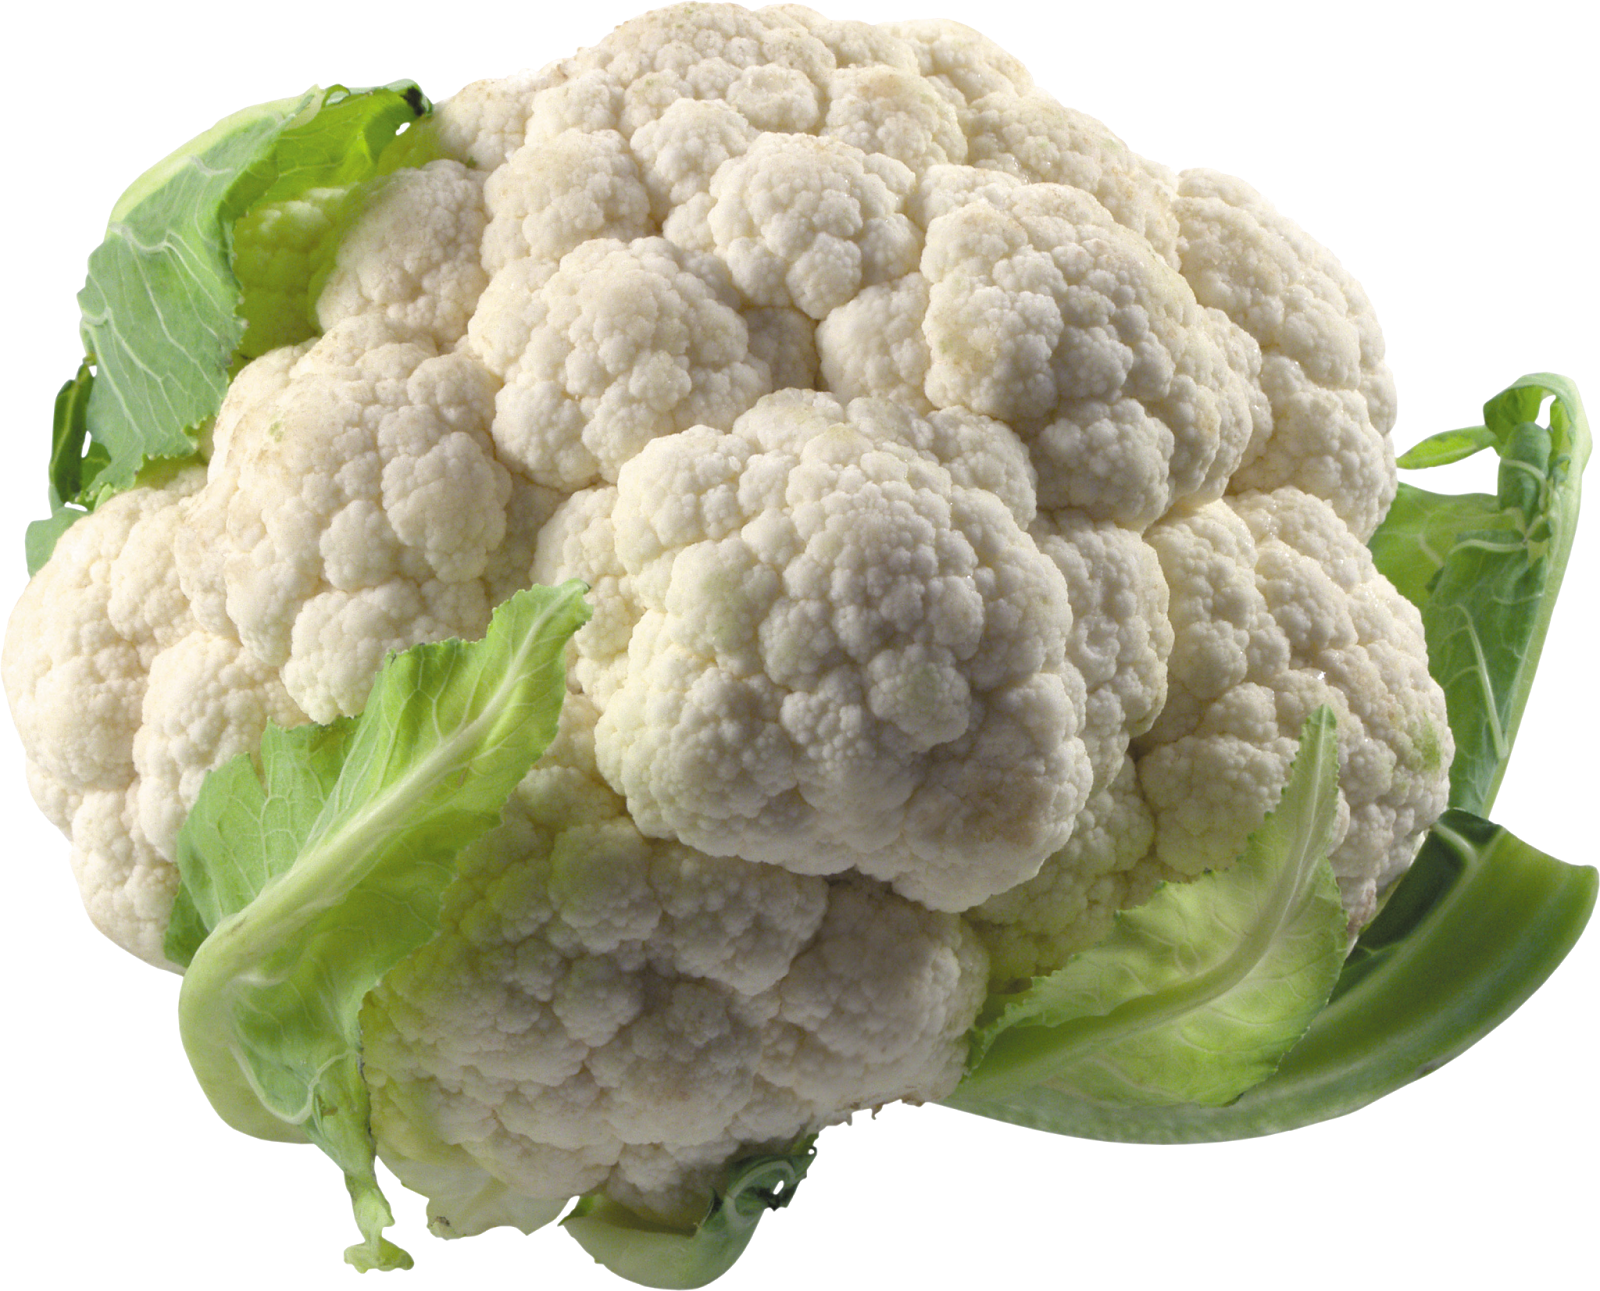 cauliflower Benefits